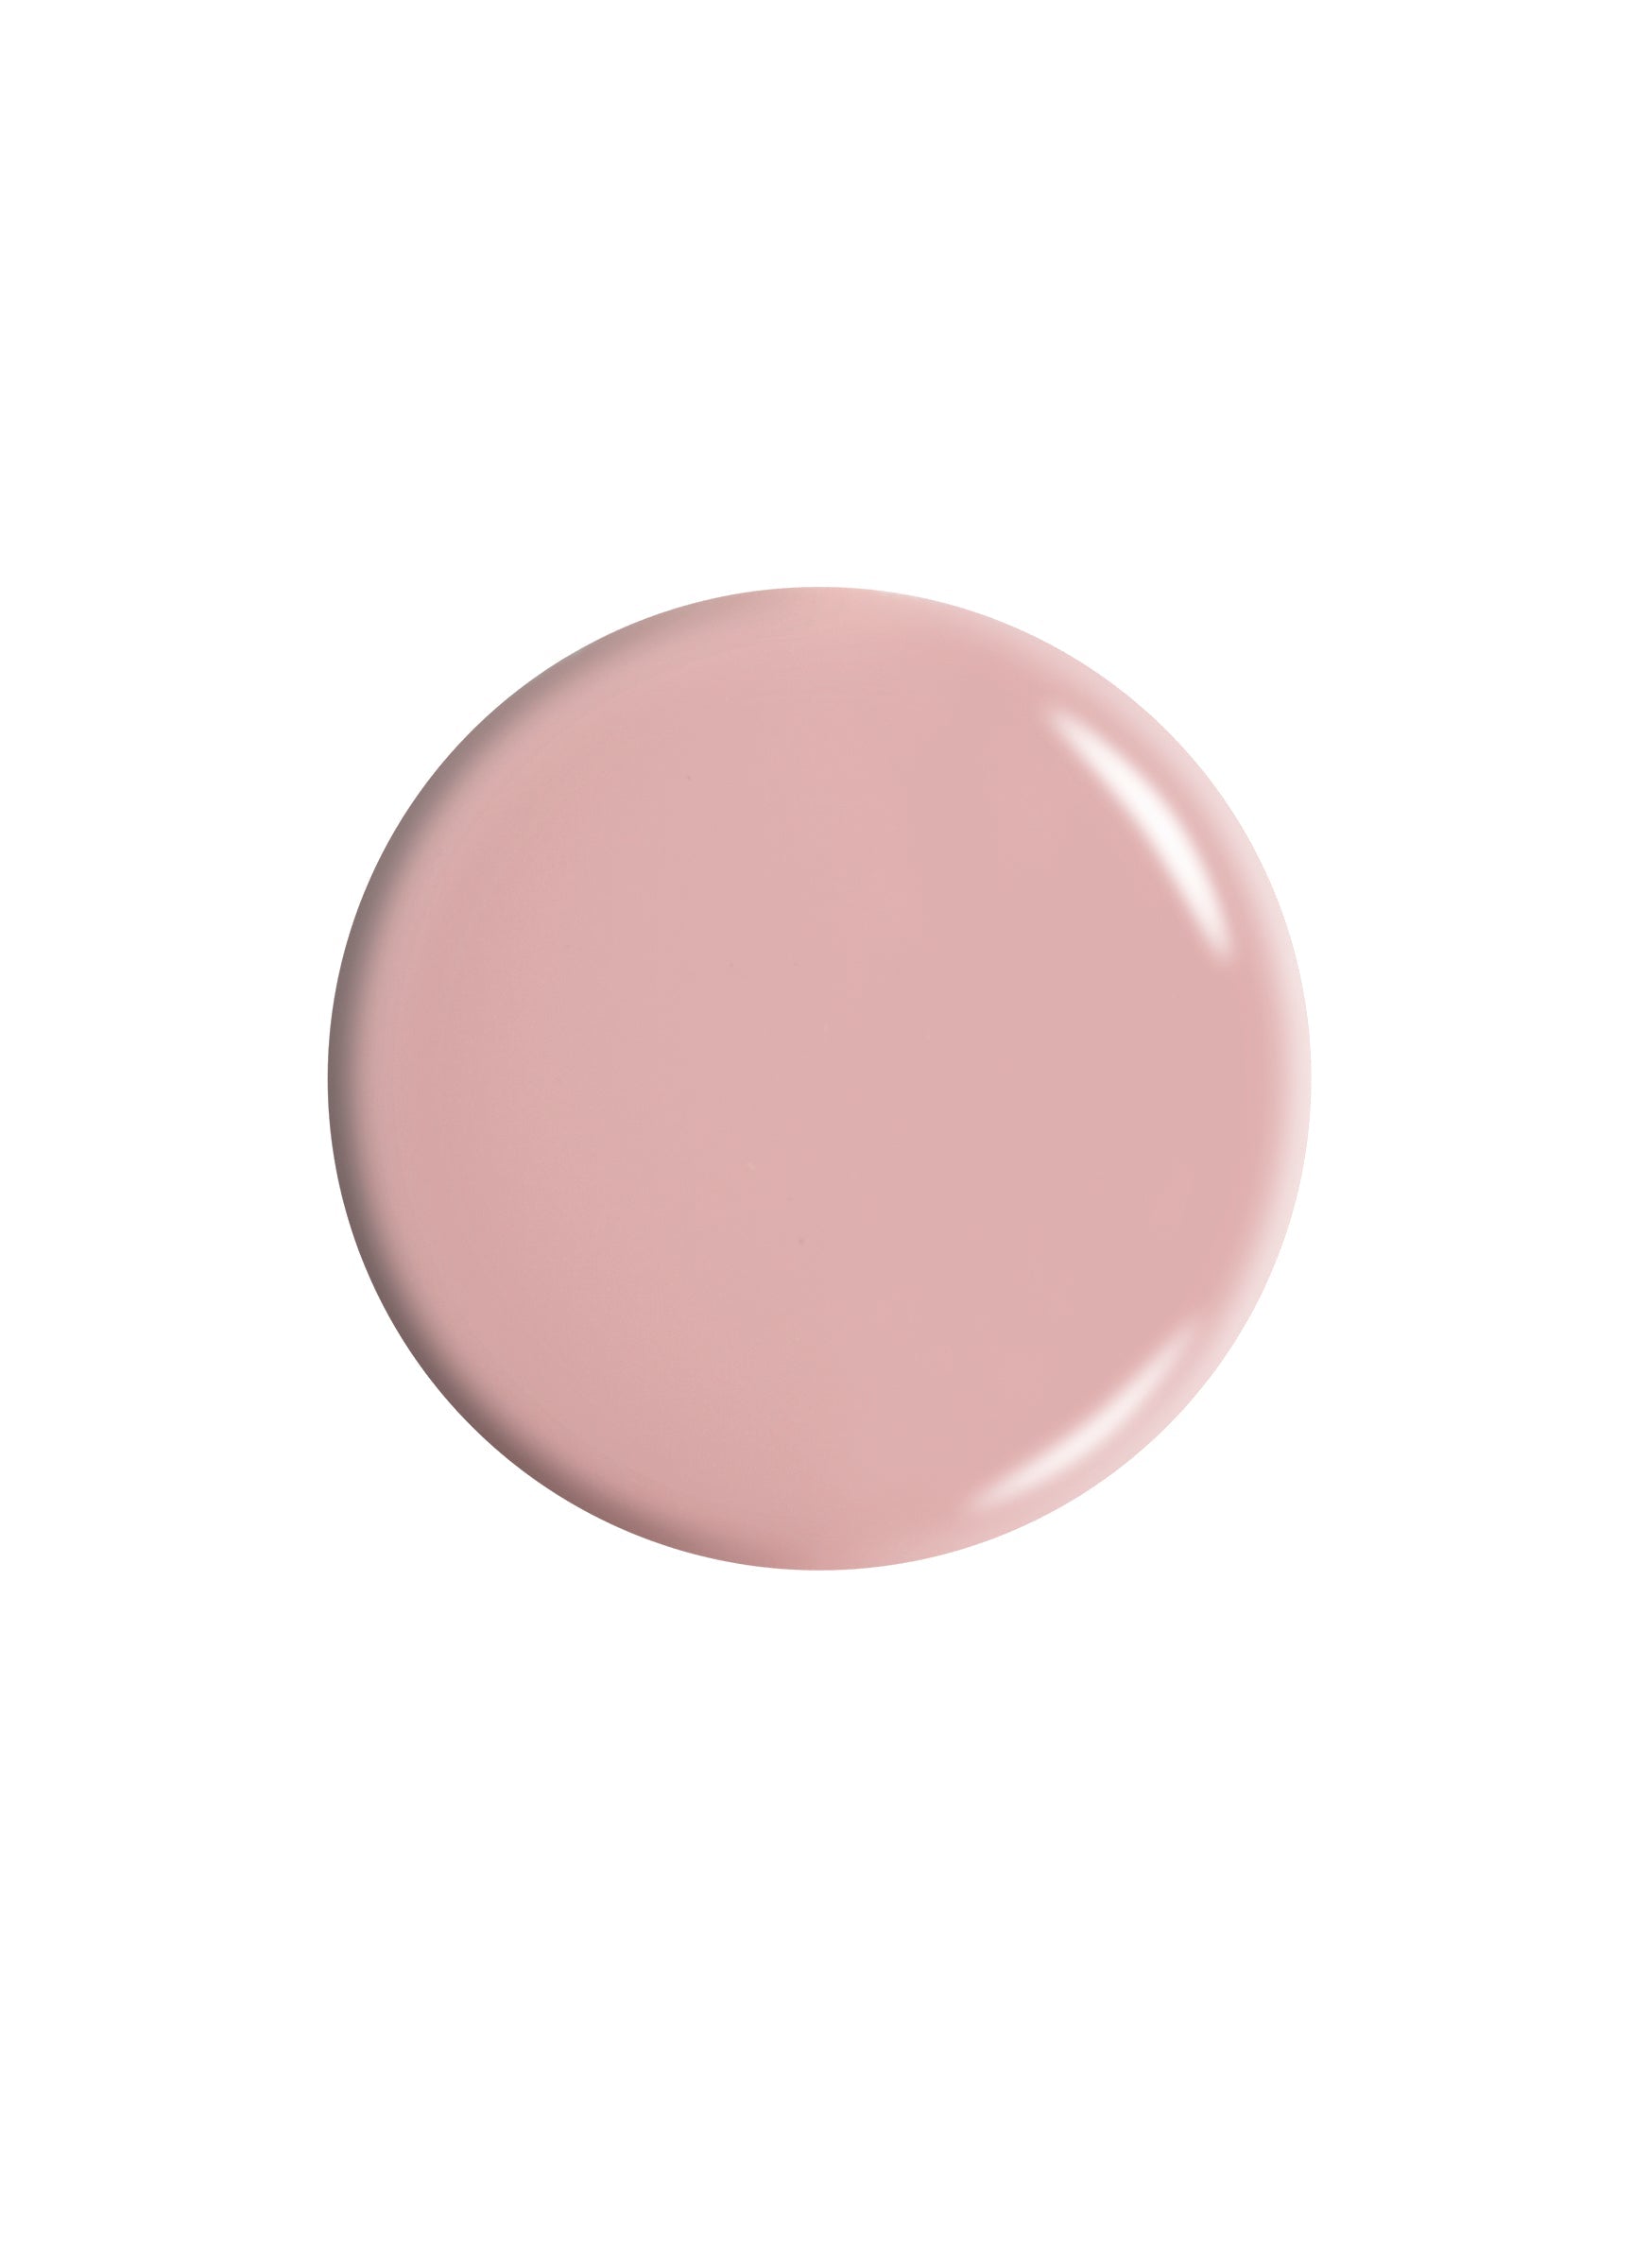 Dr.'s REMEDY Enriched Nail Polish / PRECIOUS Pink (creme) 15ml